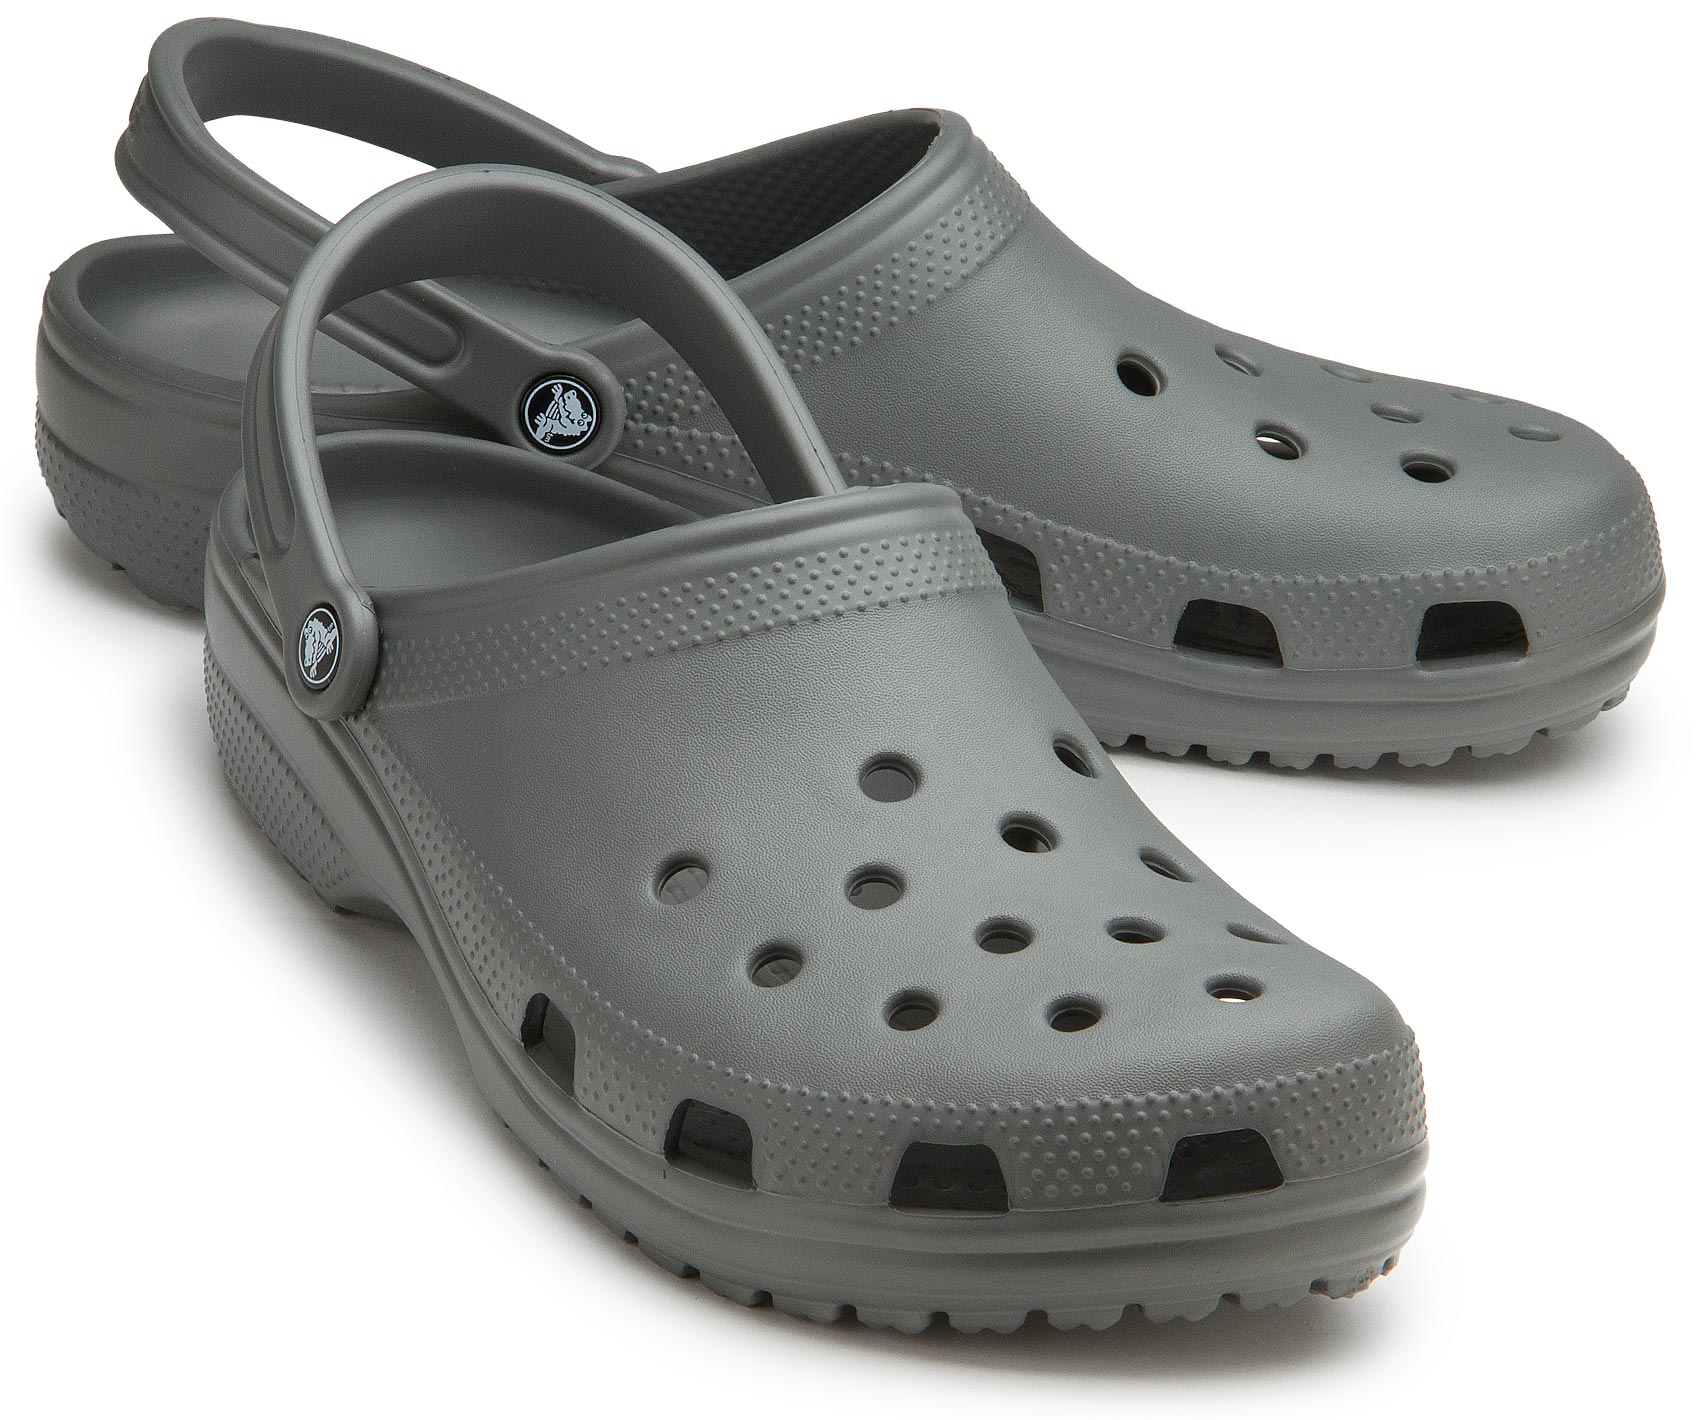 Crocs plus sizes: 8270-13 2100001724351